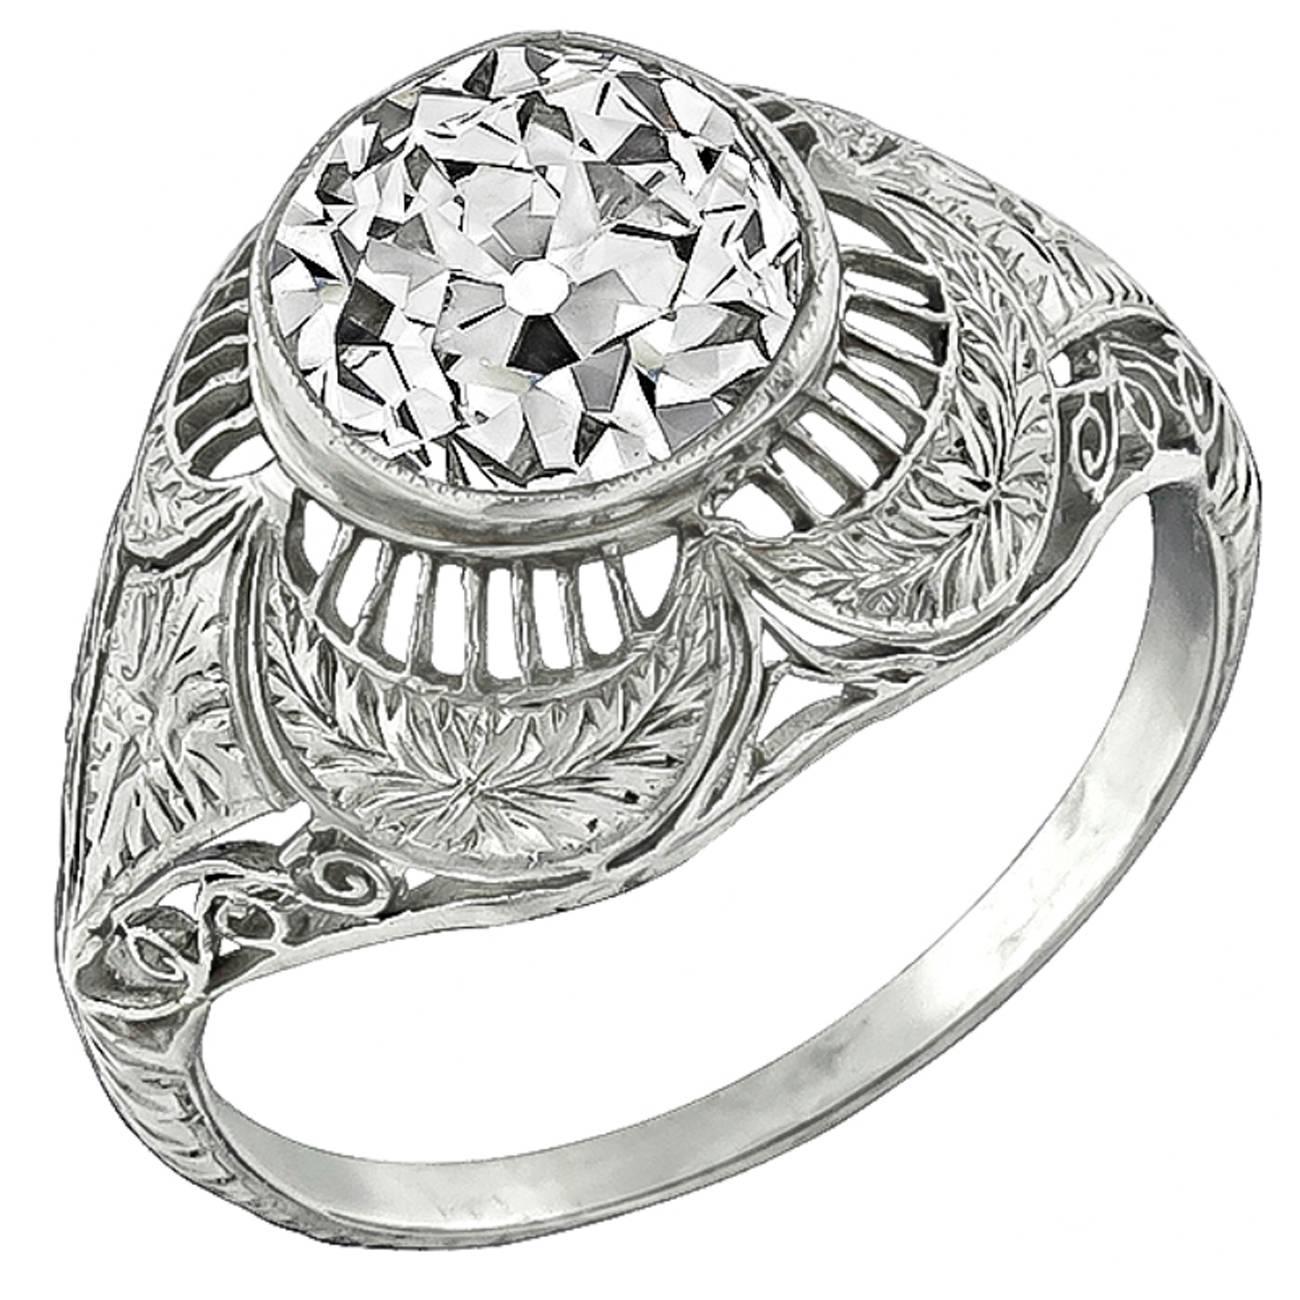 Edwardian 3.23 Carat Diamond Engagement Ring